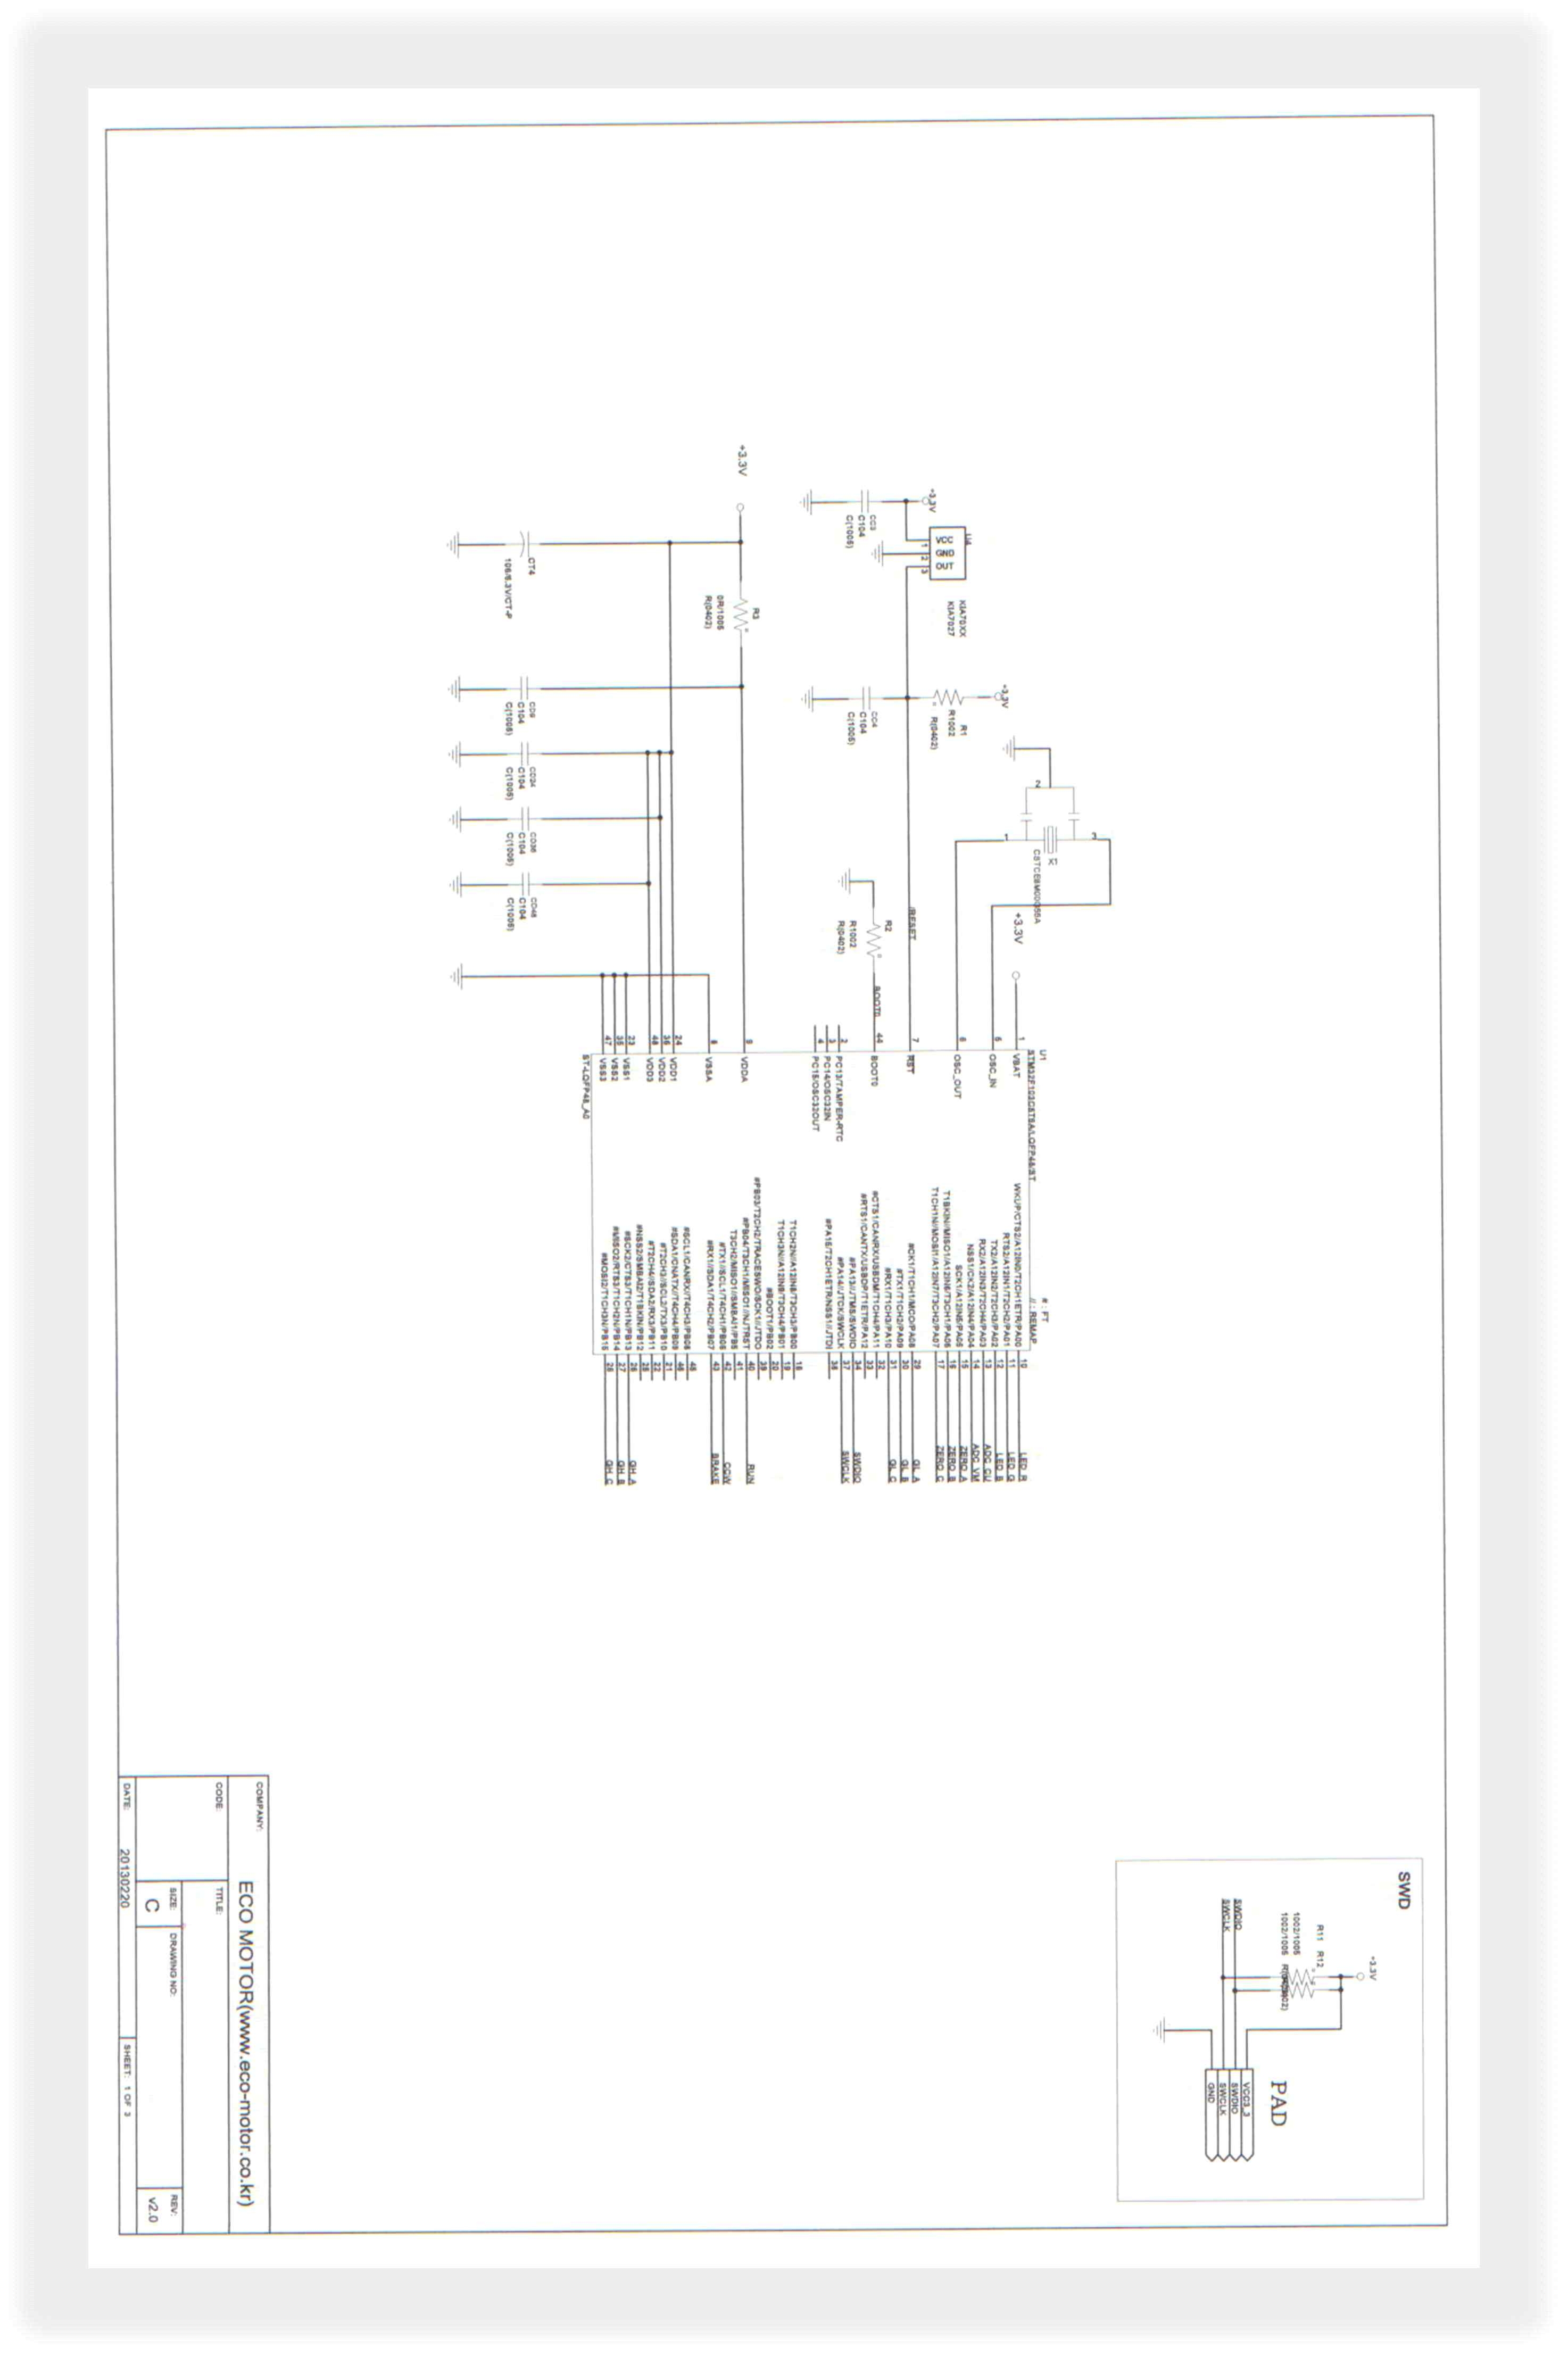 (그림8-2) - BLDC모터 PCB도면